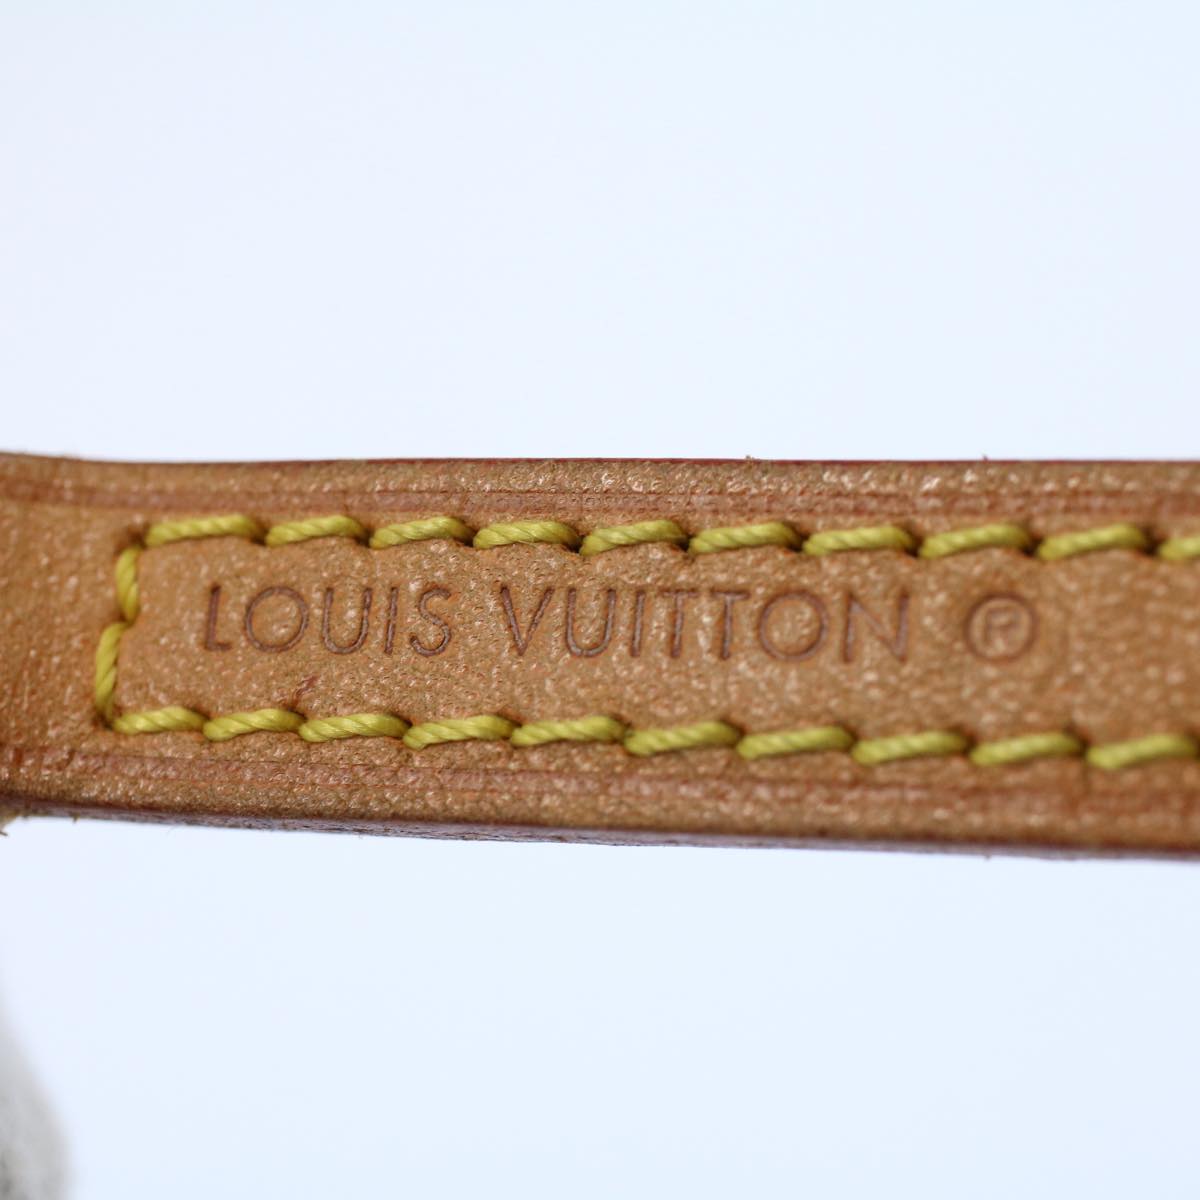 LOUIS VUITTON Shoulder Strap Leather 44.9"" Beige LV Auth ki3439